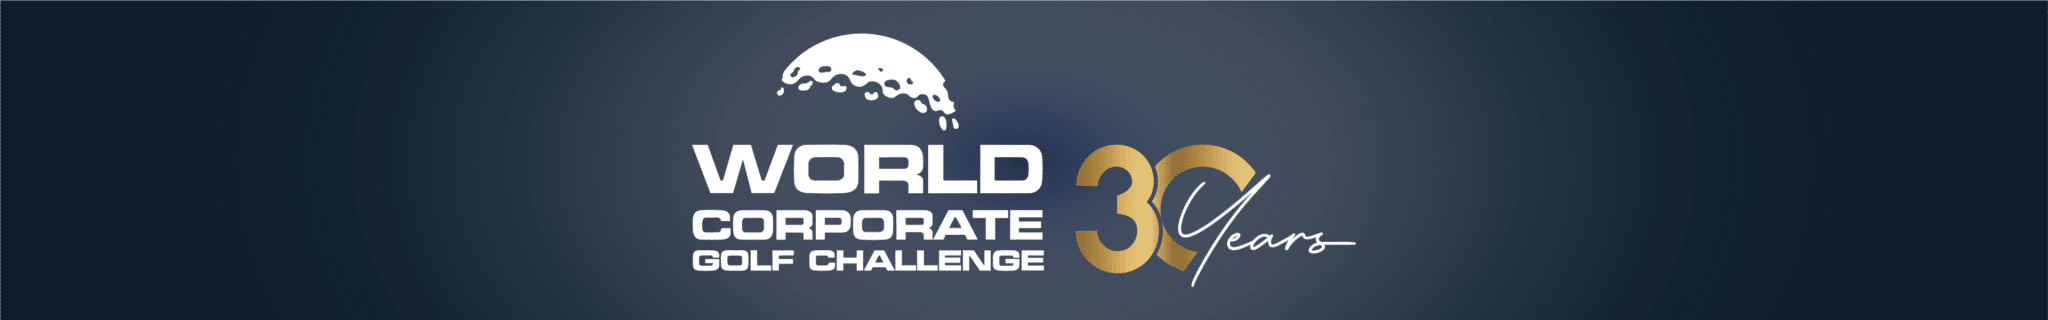 WCGC 30 YEARS LOGO | World Corporate Golf Challenge